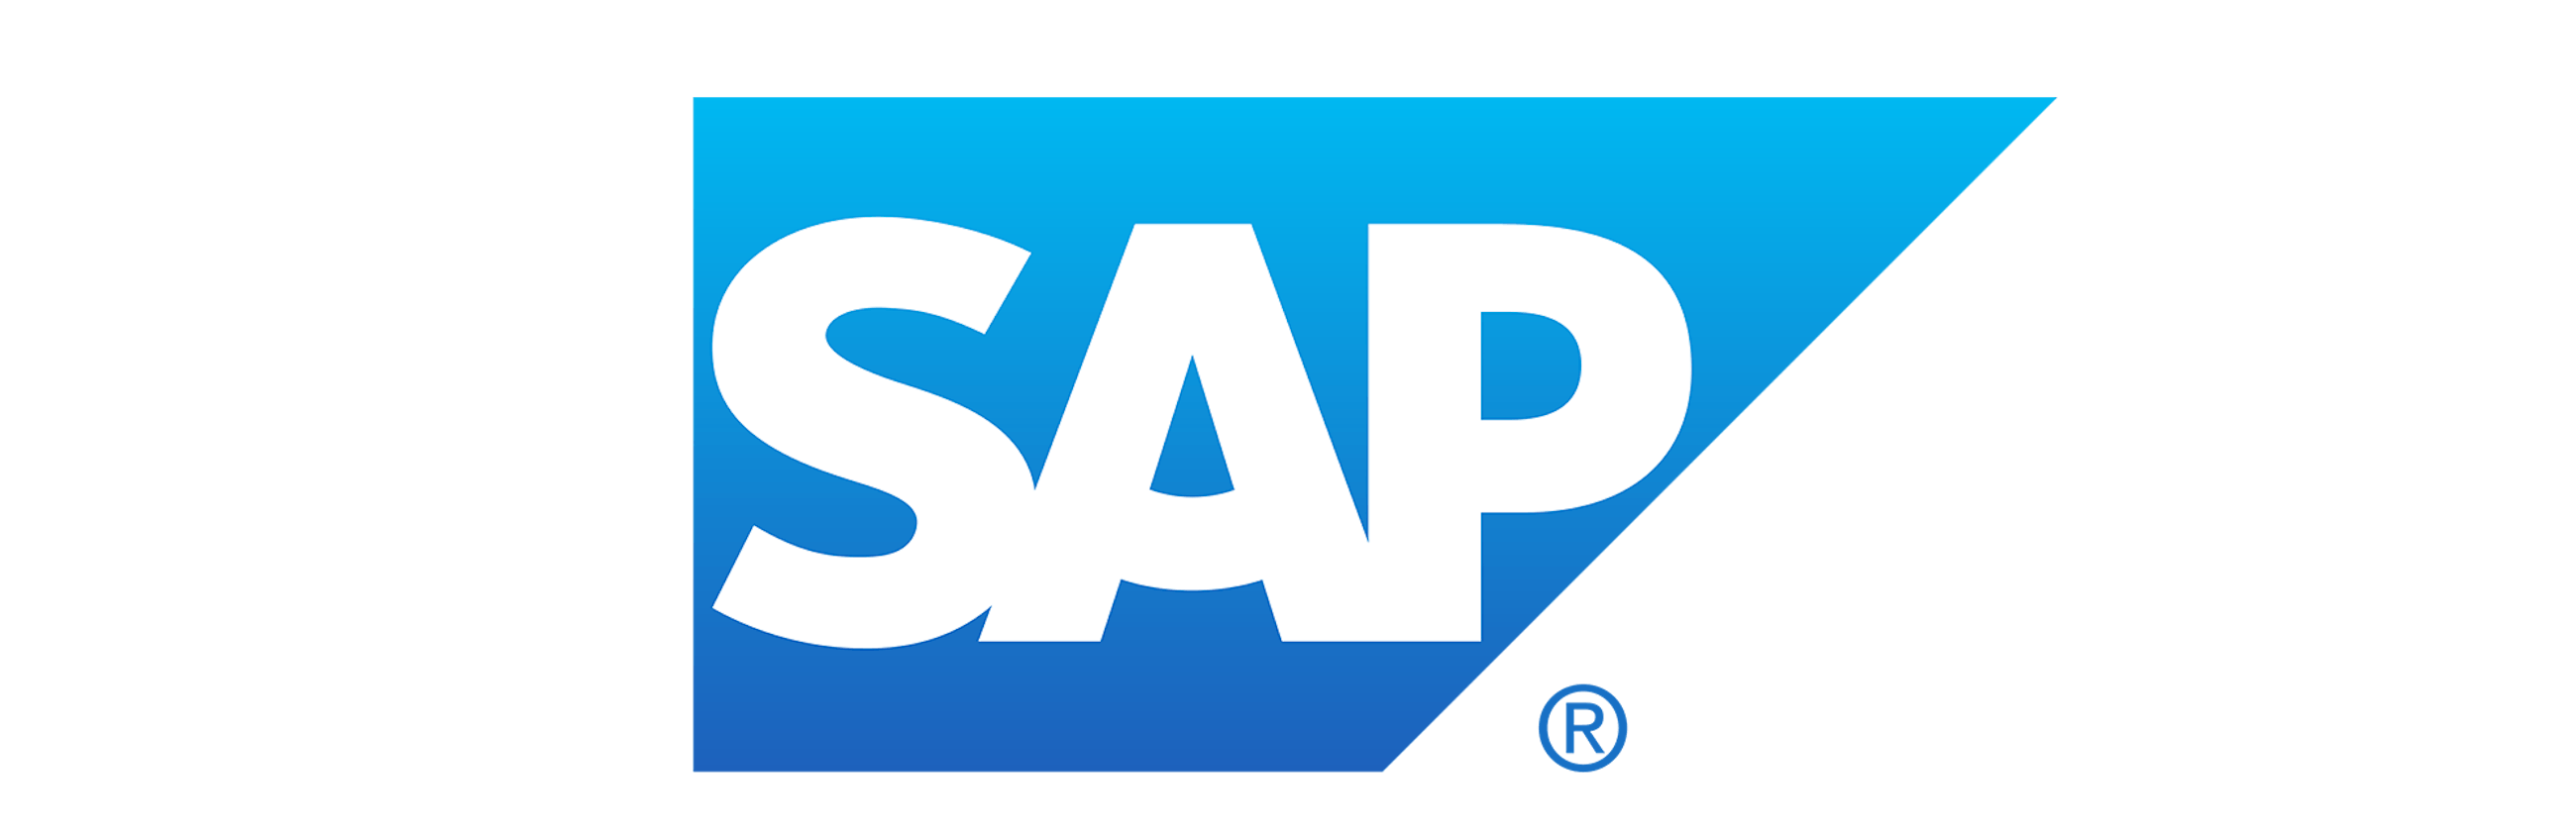 SAP logo red